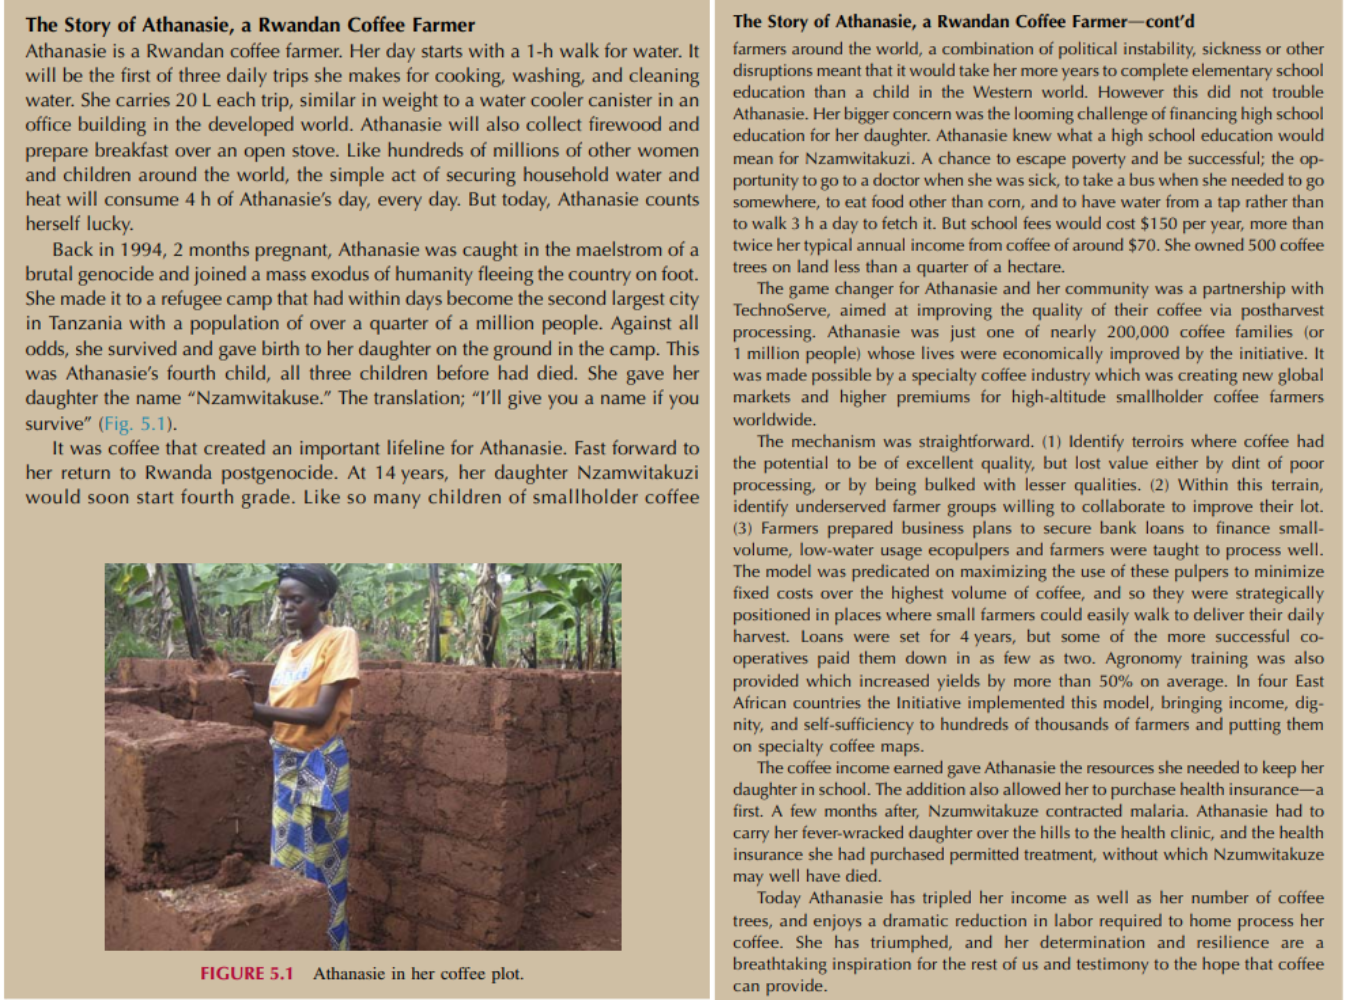 Câu chuyện của Athanasie, một nông dân trồng cà phê người Rwanda